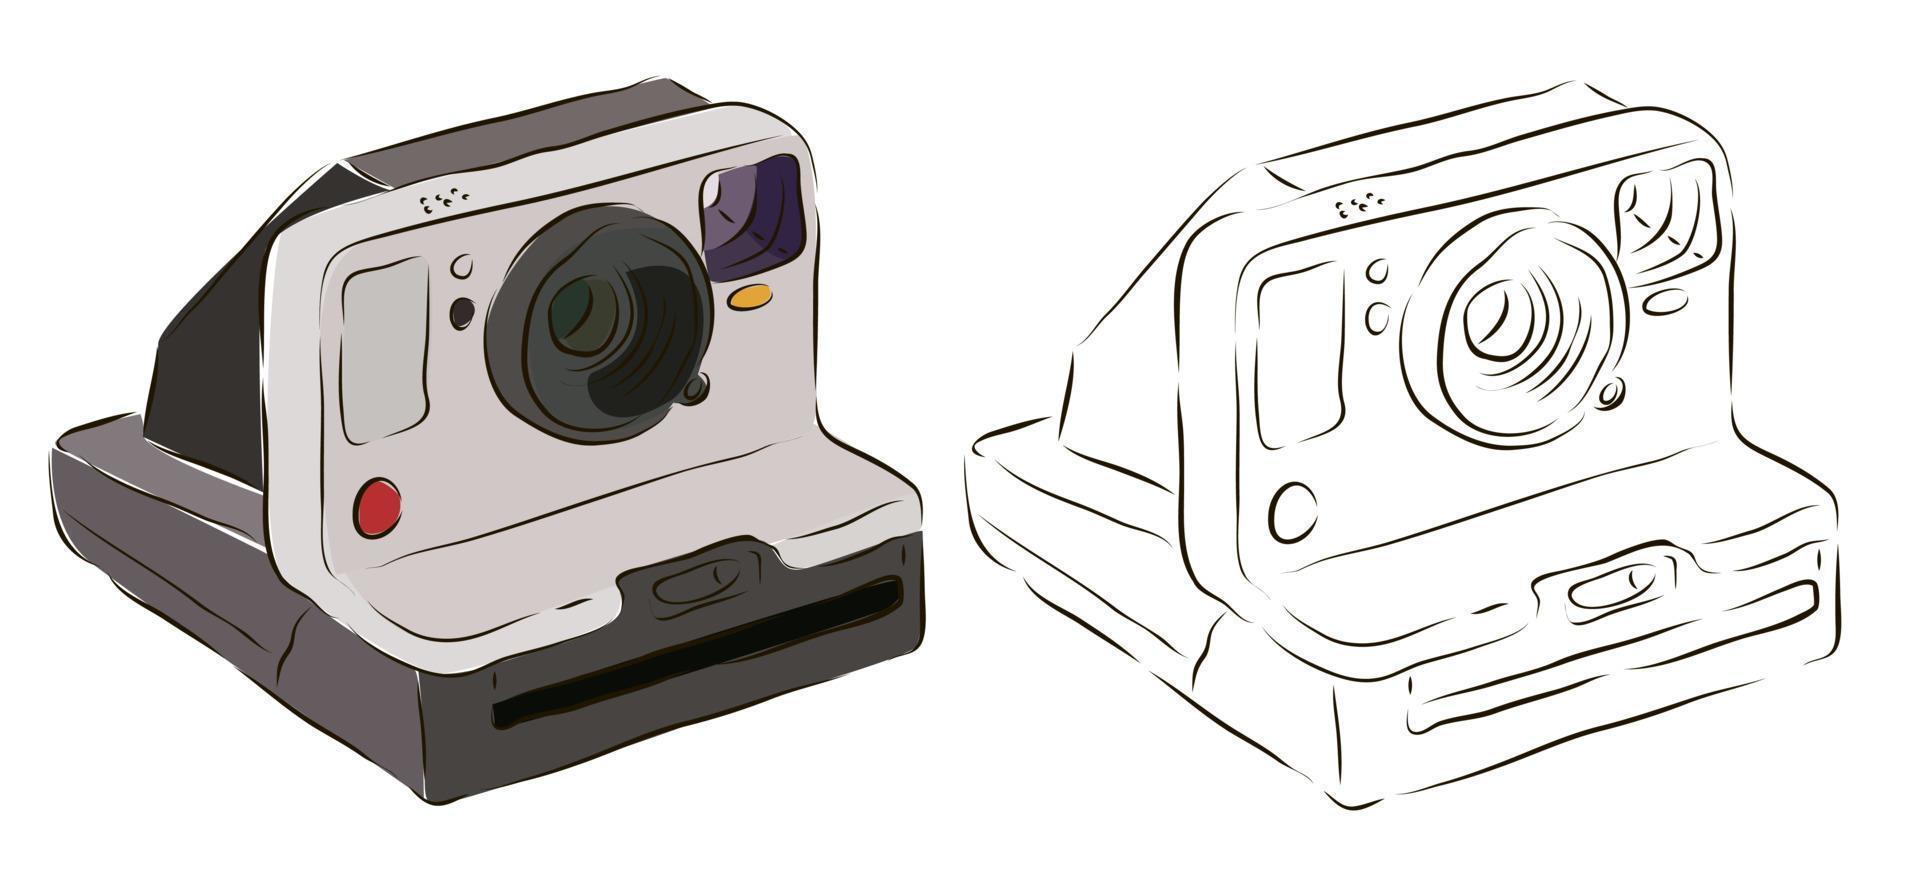 una vieja cámara polaroid en color y en blanco y negro. el concepto de la vieja técnica polaroid. vector